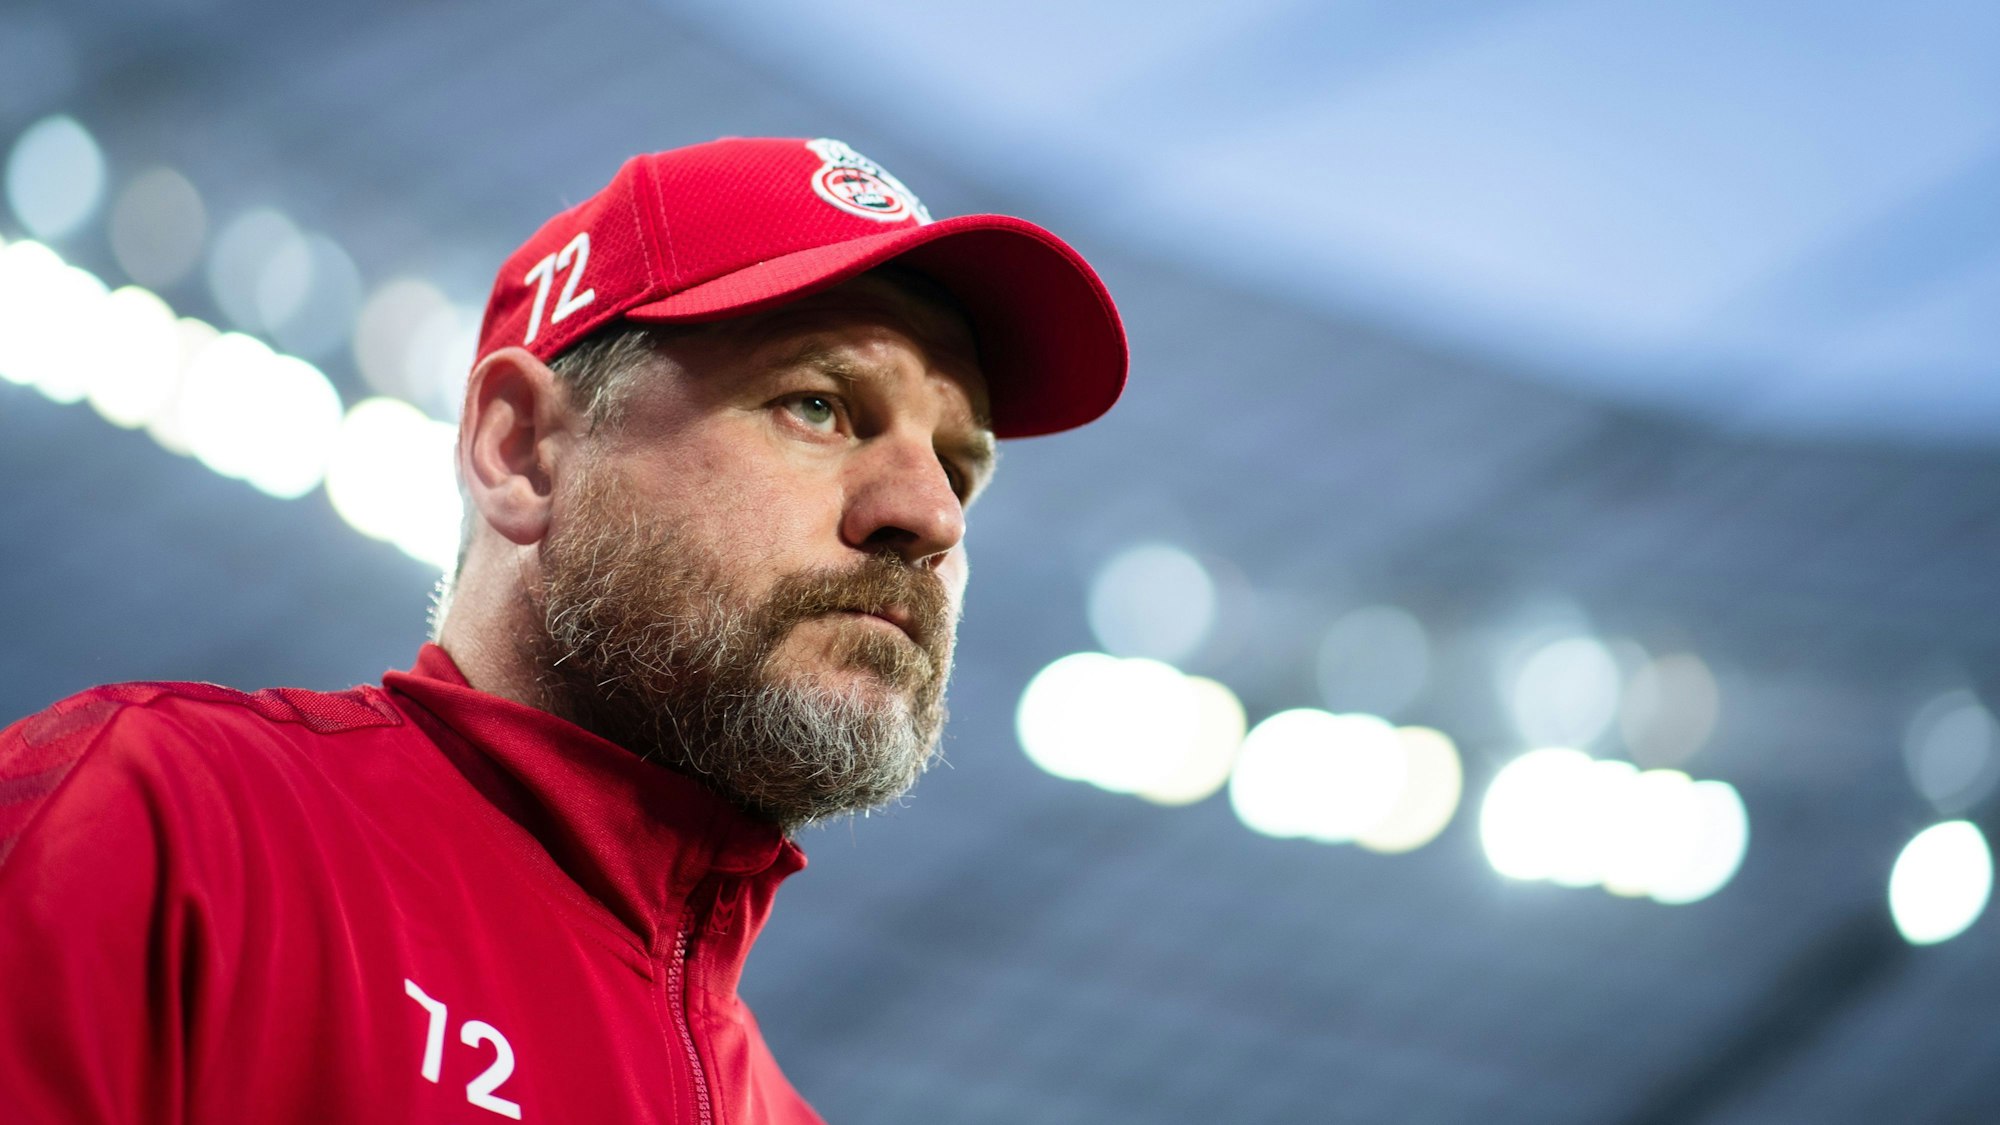 FC-Trainer Steffen Baumgart beim Auswärtsspiel des 1. FC Köln in Leverkusen am 31. Spieltag. (Archivbild)